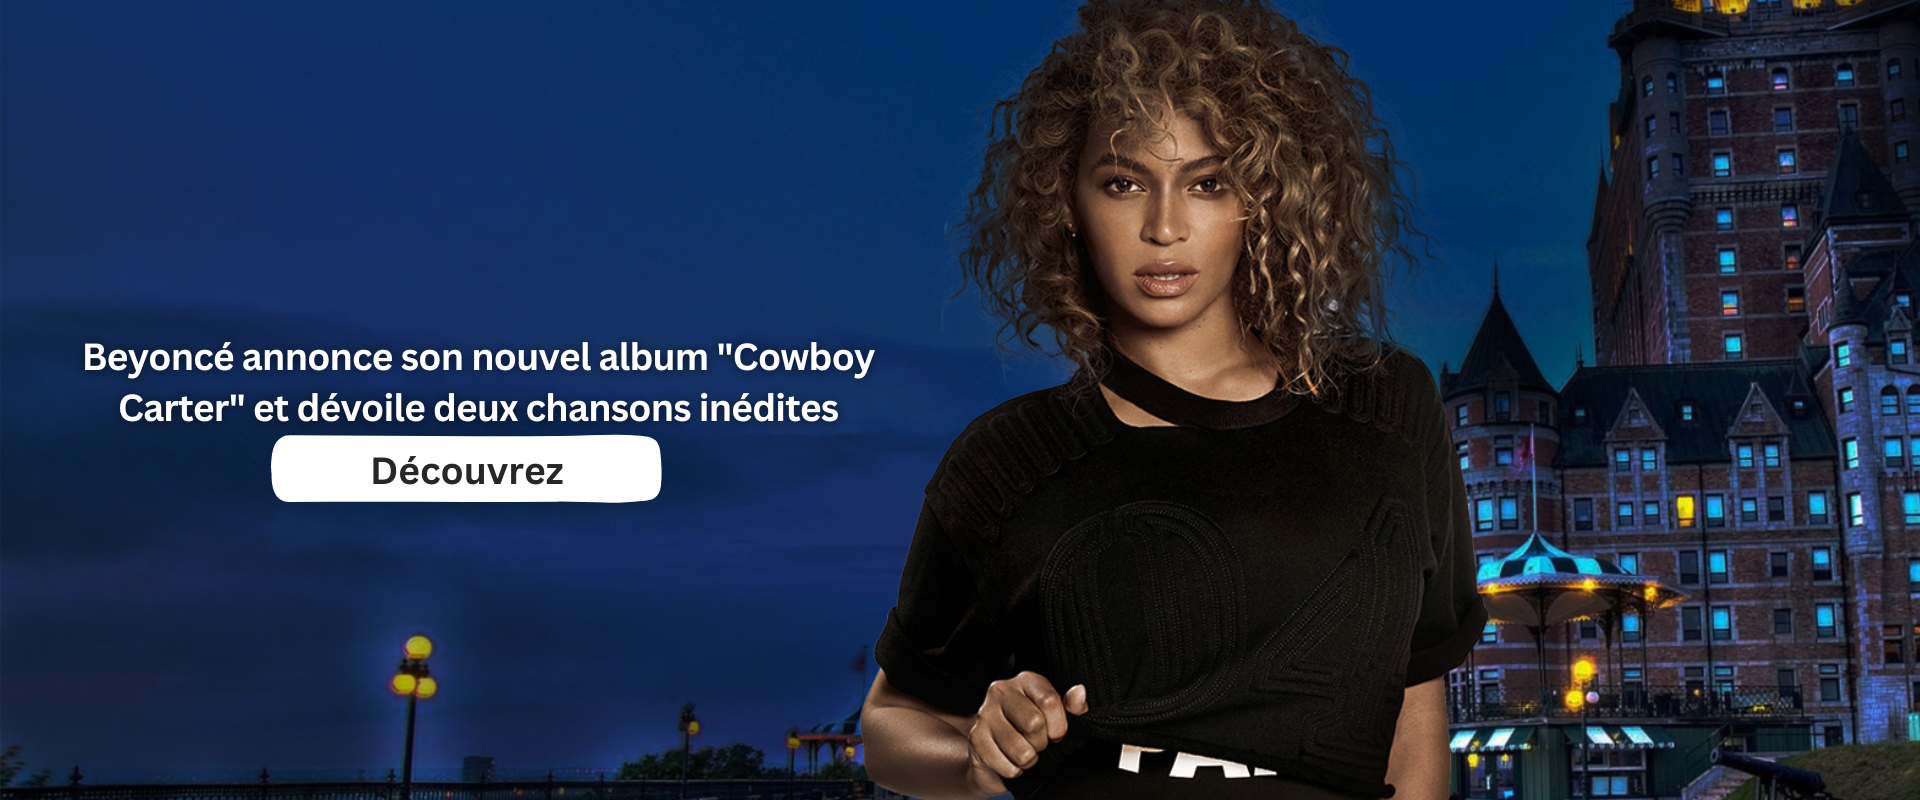 Beyoncé annonce son nouvel album "Cowboy Carter" et dévoile deux chansons inédites